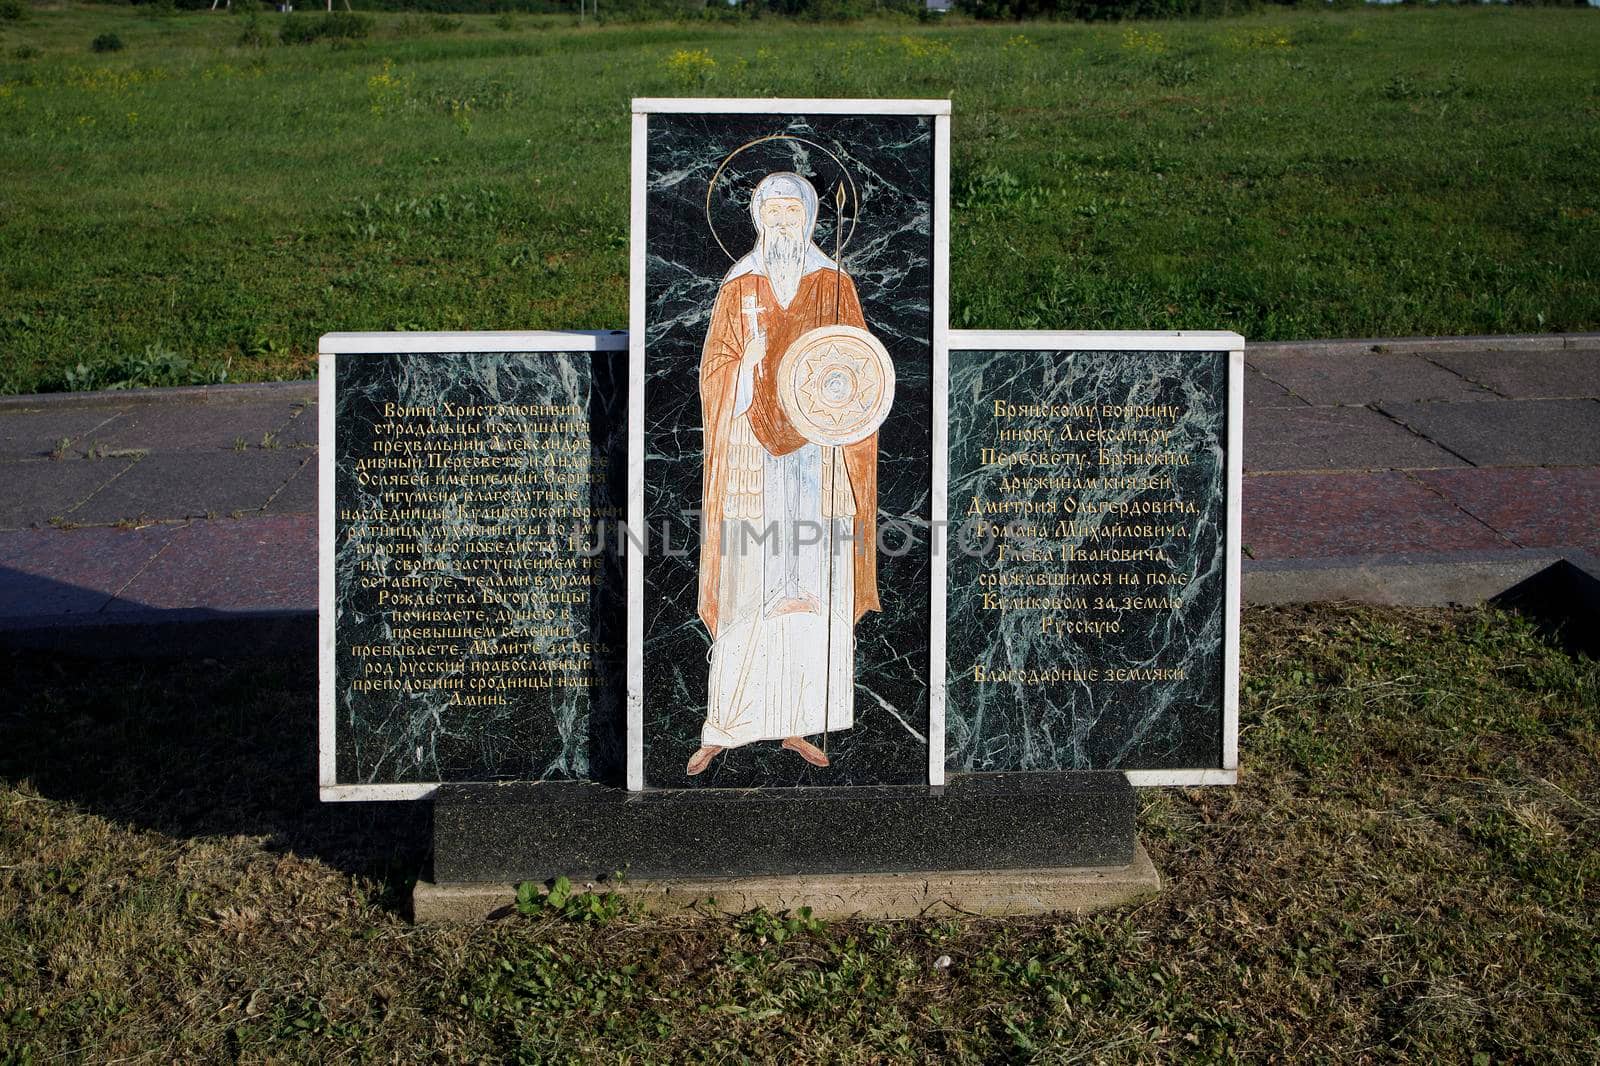 Monastyrshchino, Yepifan, Tula , Russia - June 8, 2021: Kulikovo field monument cross to Bryansk heroes of the Battle of Kulikovo by elenarostunova